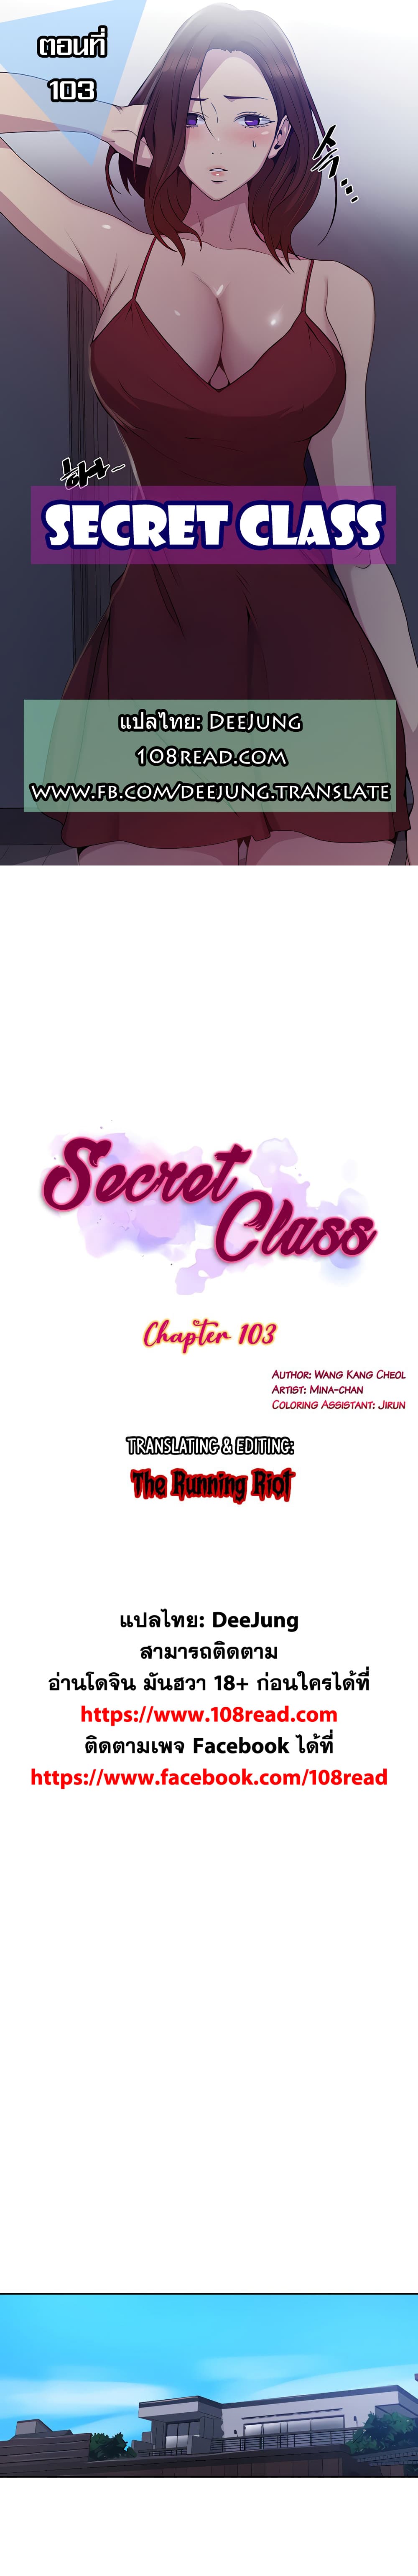 Secret Class 103 (1)